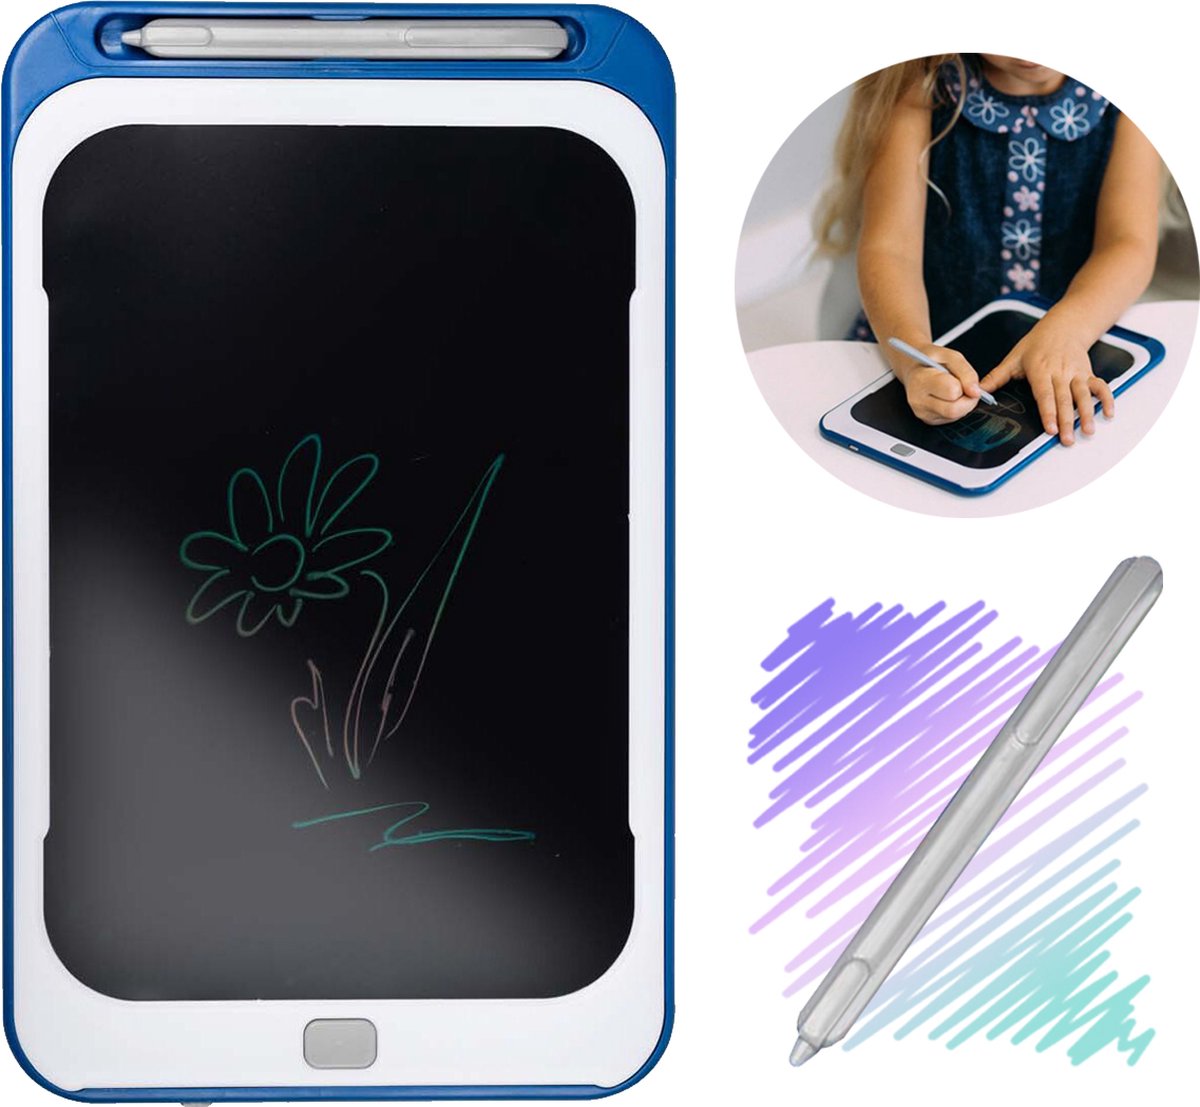 Free2Play by FreeON LCD Tekentablet voor kinderen - 8.5 inch kleurenscherm - Blauw